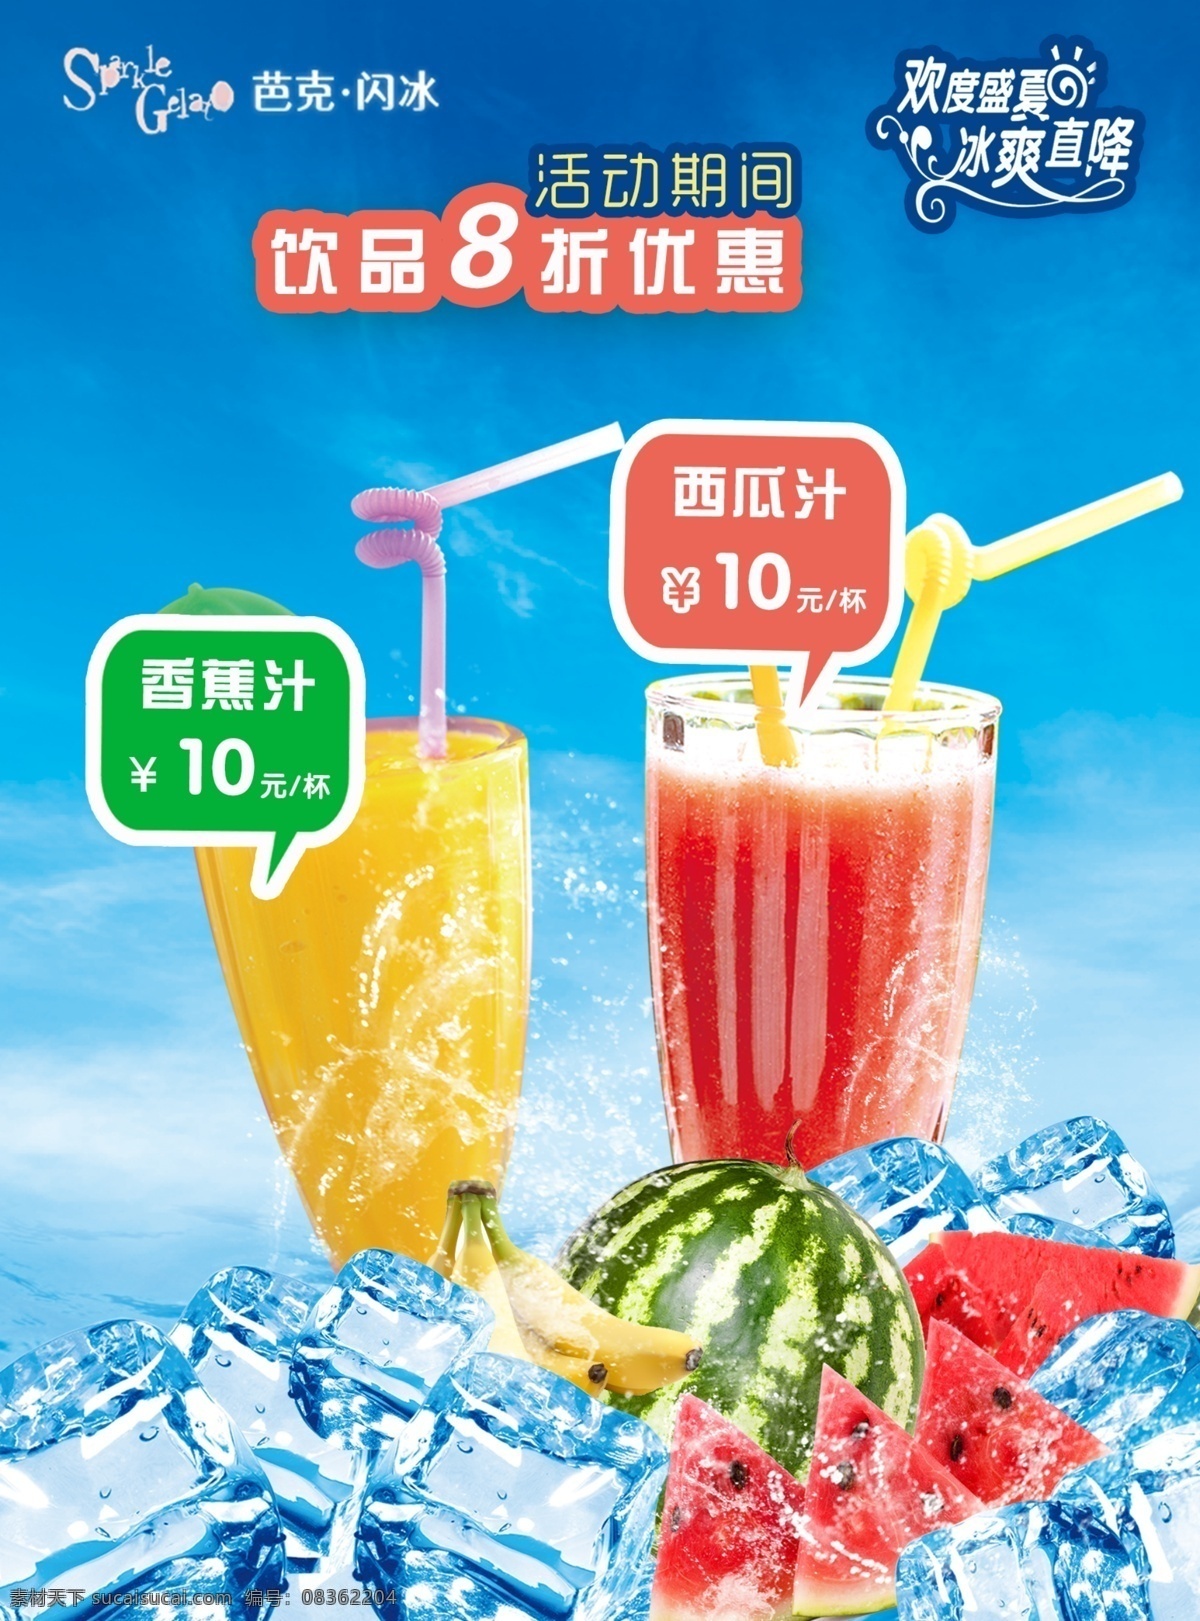 果汁饮料 促销 海报 促销海报 果汁促销 西瓜汁 香蕉汁 冰块 蓝色促销海报 欢度盛夏